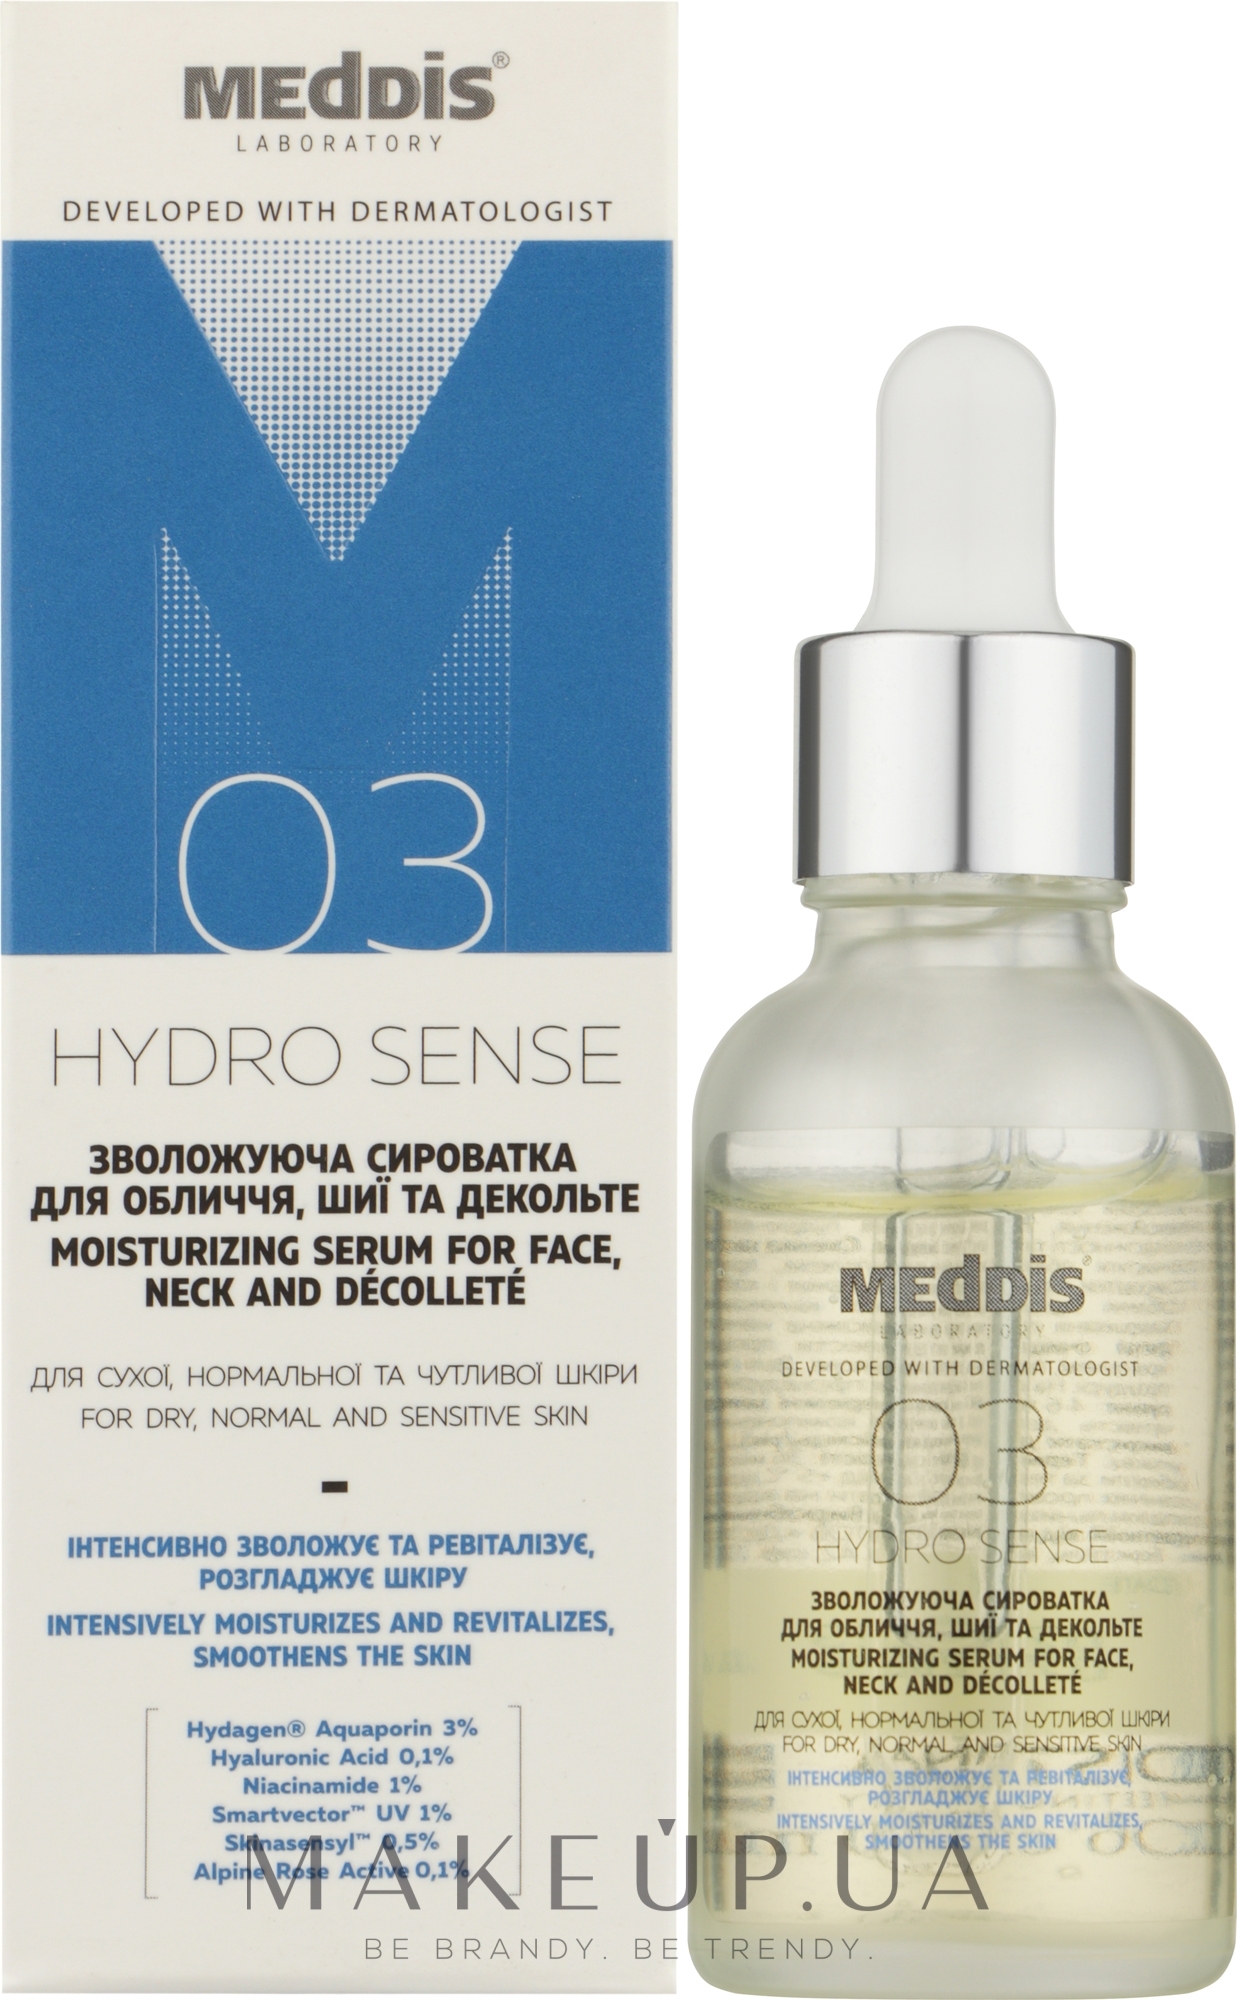 Увлажняющая сыворотка для лица, шеи и декольте - Meddis Hydrosense Moisturizing Serum For Face, Neck And Decollete — фото 30ml